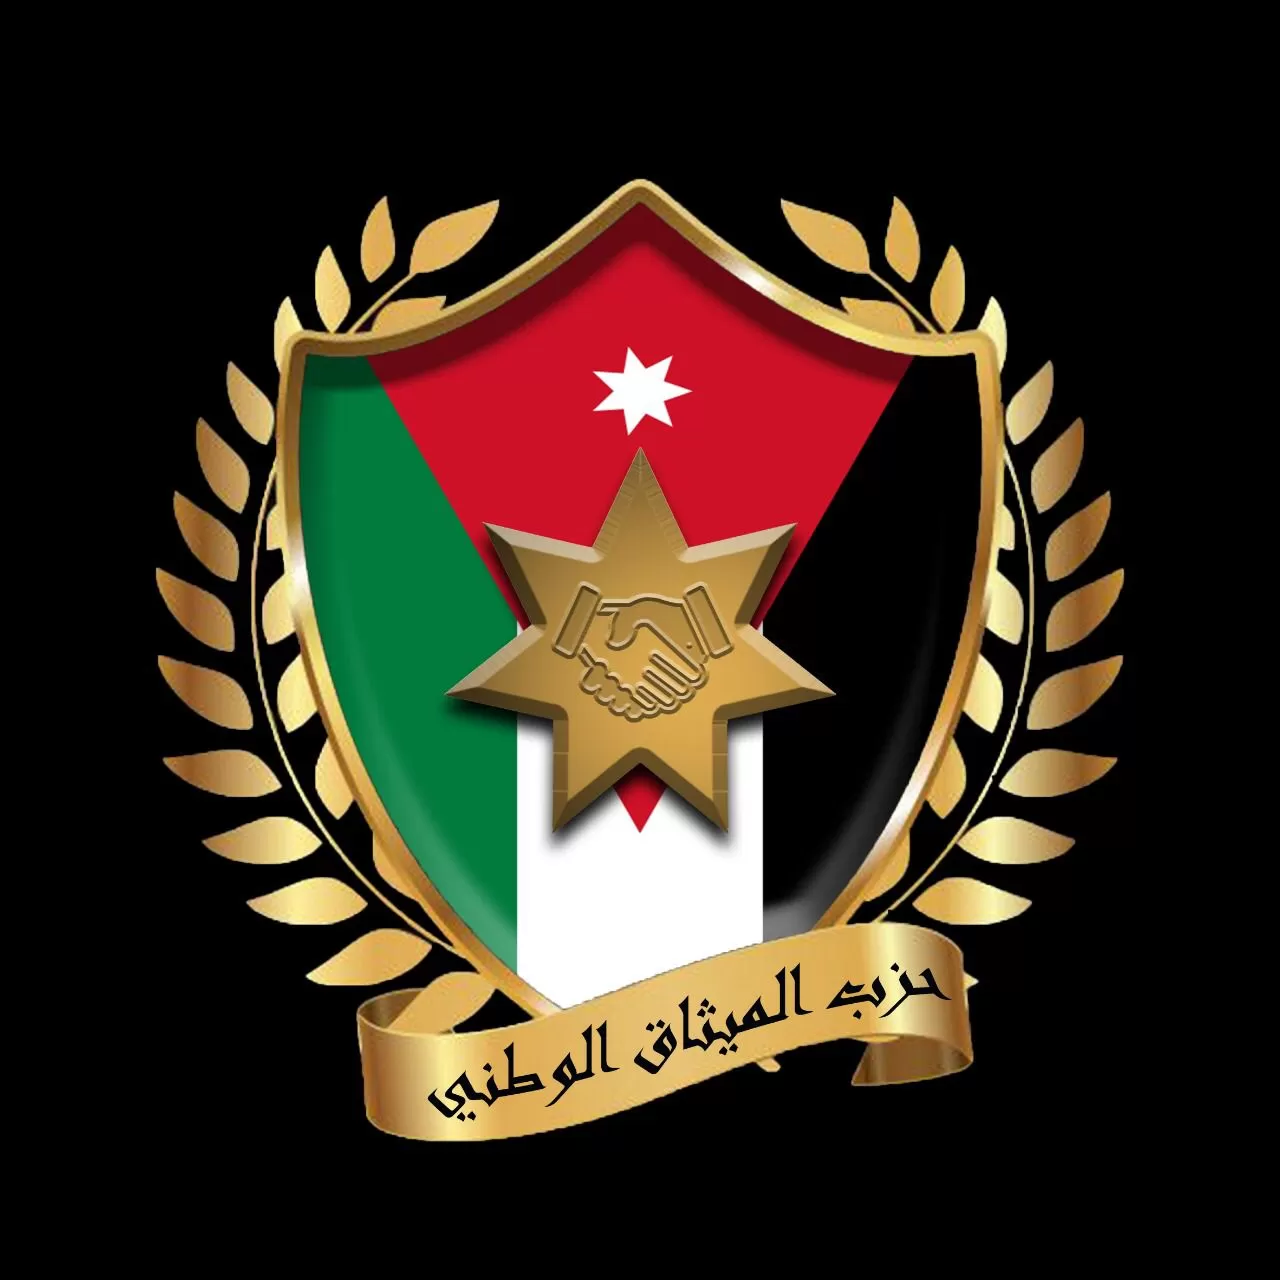 مدار الساعة,وفيات اليوم في الأردن,حزب الميثاق الوطني